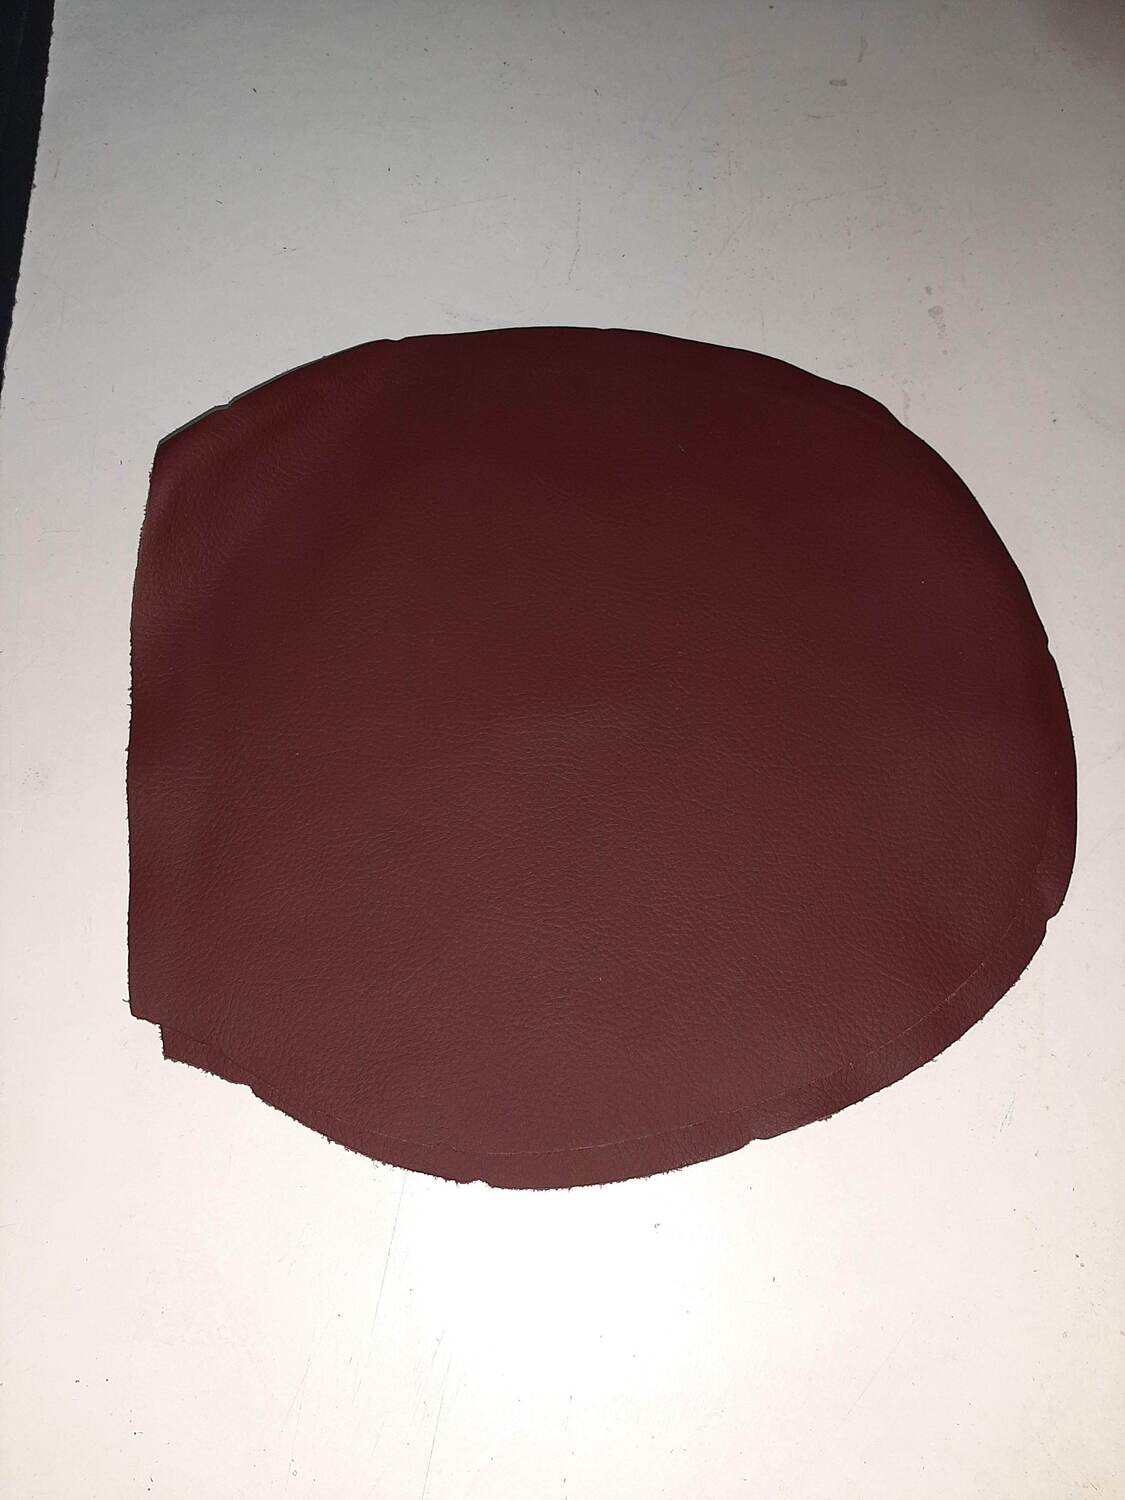 Leather pieces burgundy color 28 x 26 cm